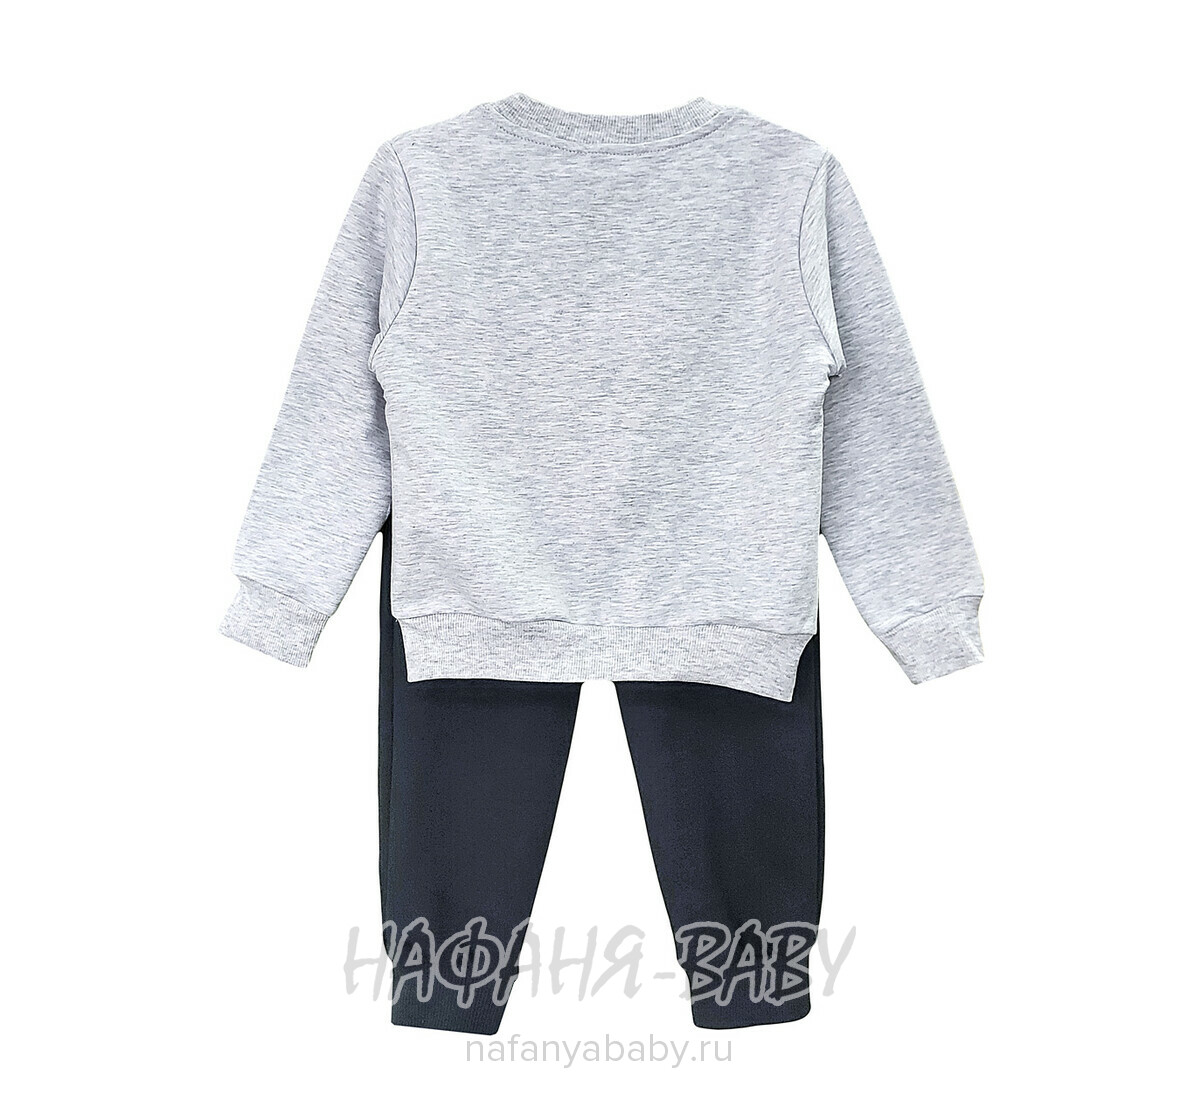 Детский костюм (свитшот + брюки) ERNES арт. 2558, 4-8 лет, цвет серый меланж, оптом, Турция